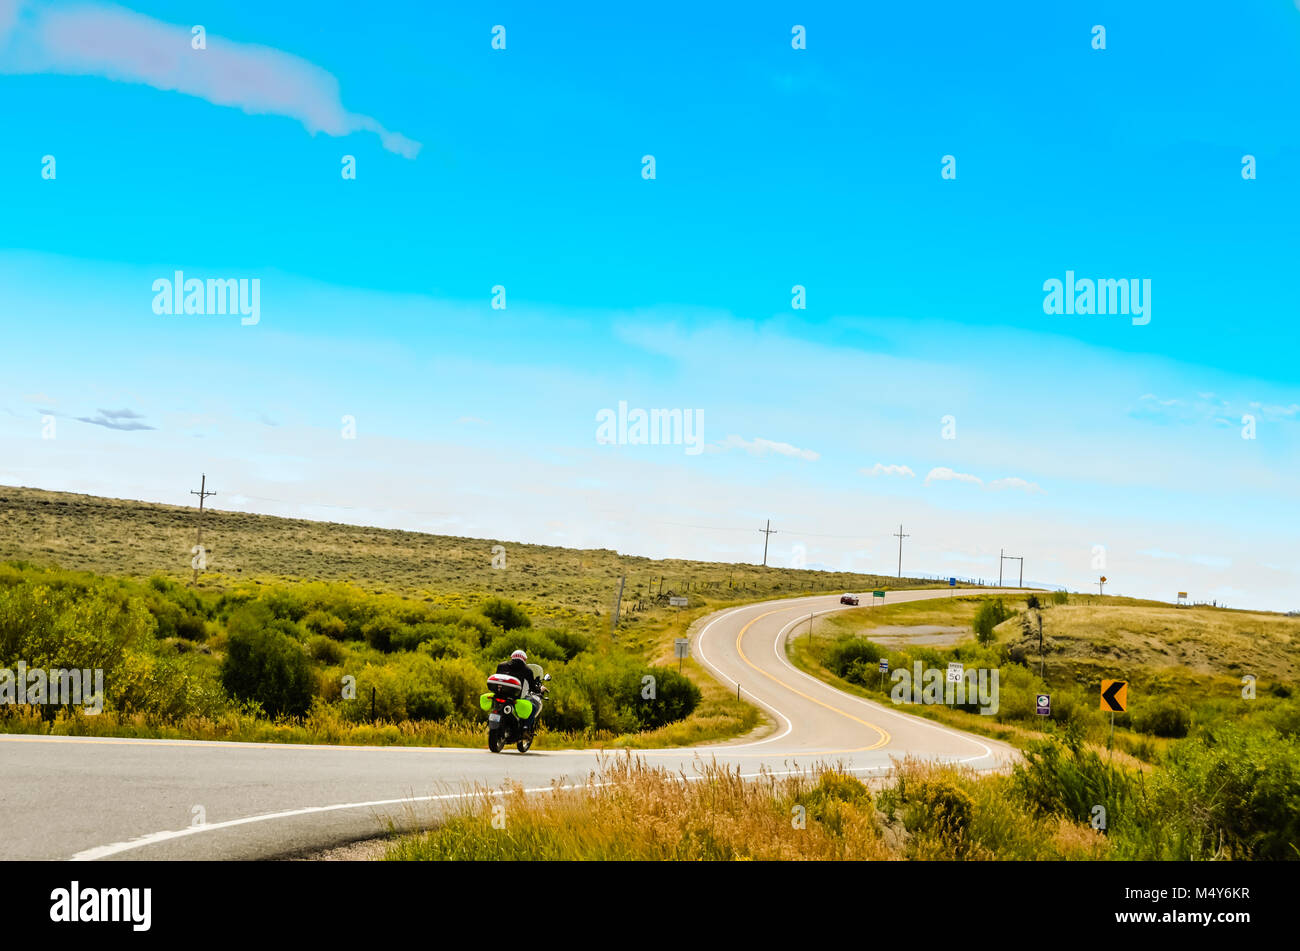 Un motocycliste rides sur une route sinueuse que les courbes de l'avant et vers le haut, rien que des prairies sur chaque côté et un grand ciel bleu au-dessus. Banque D'Images